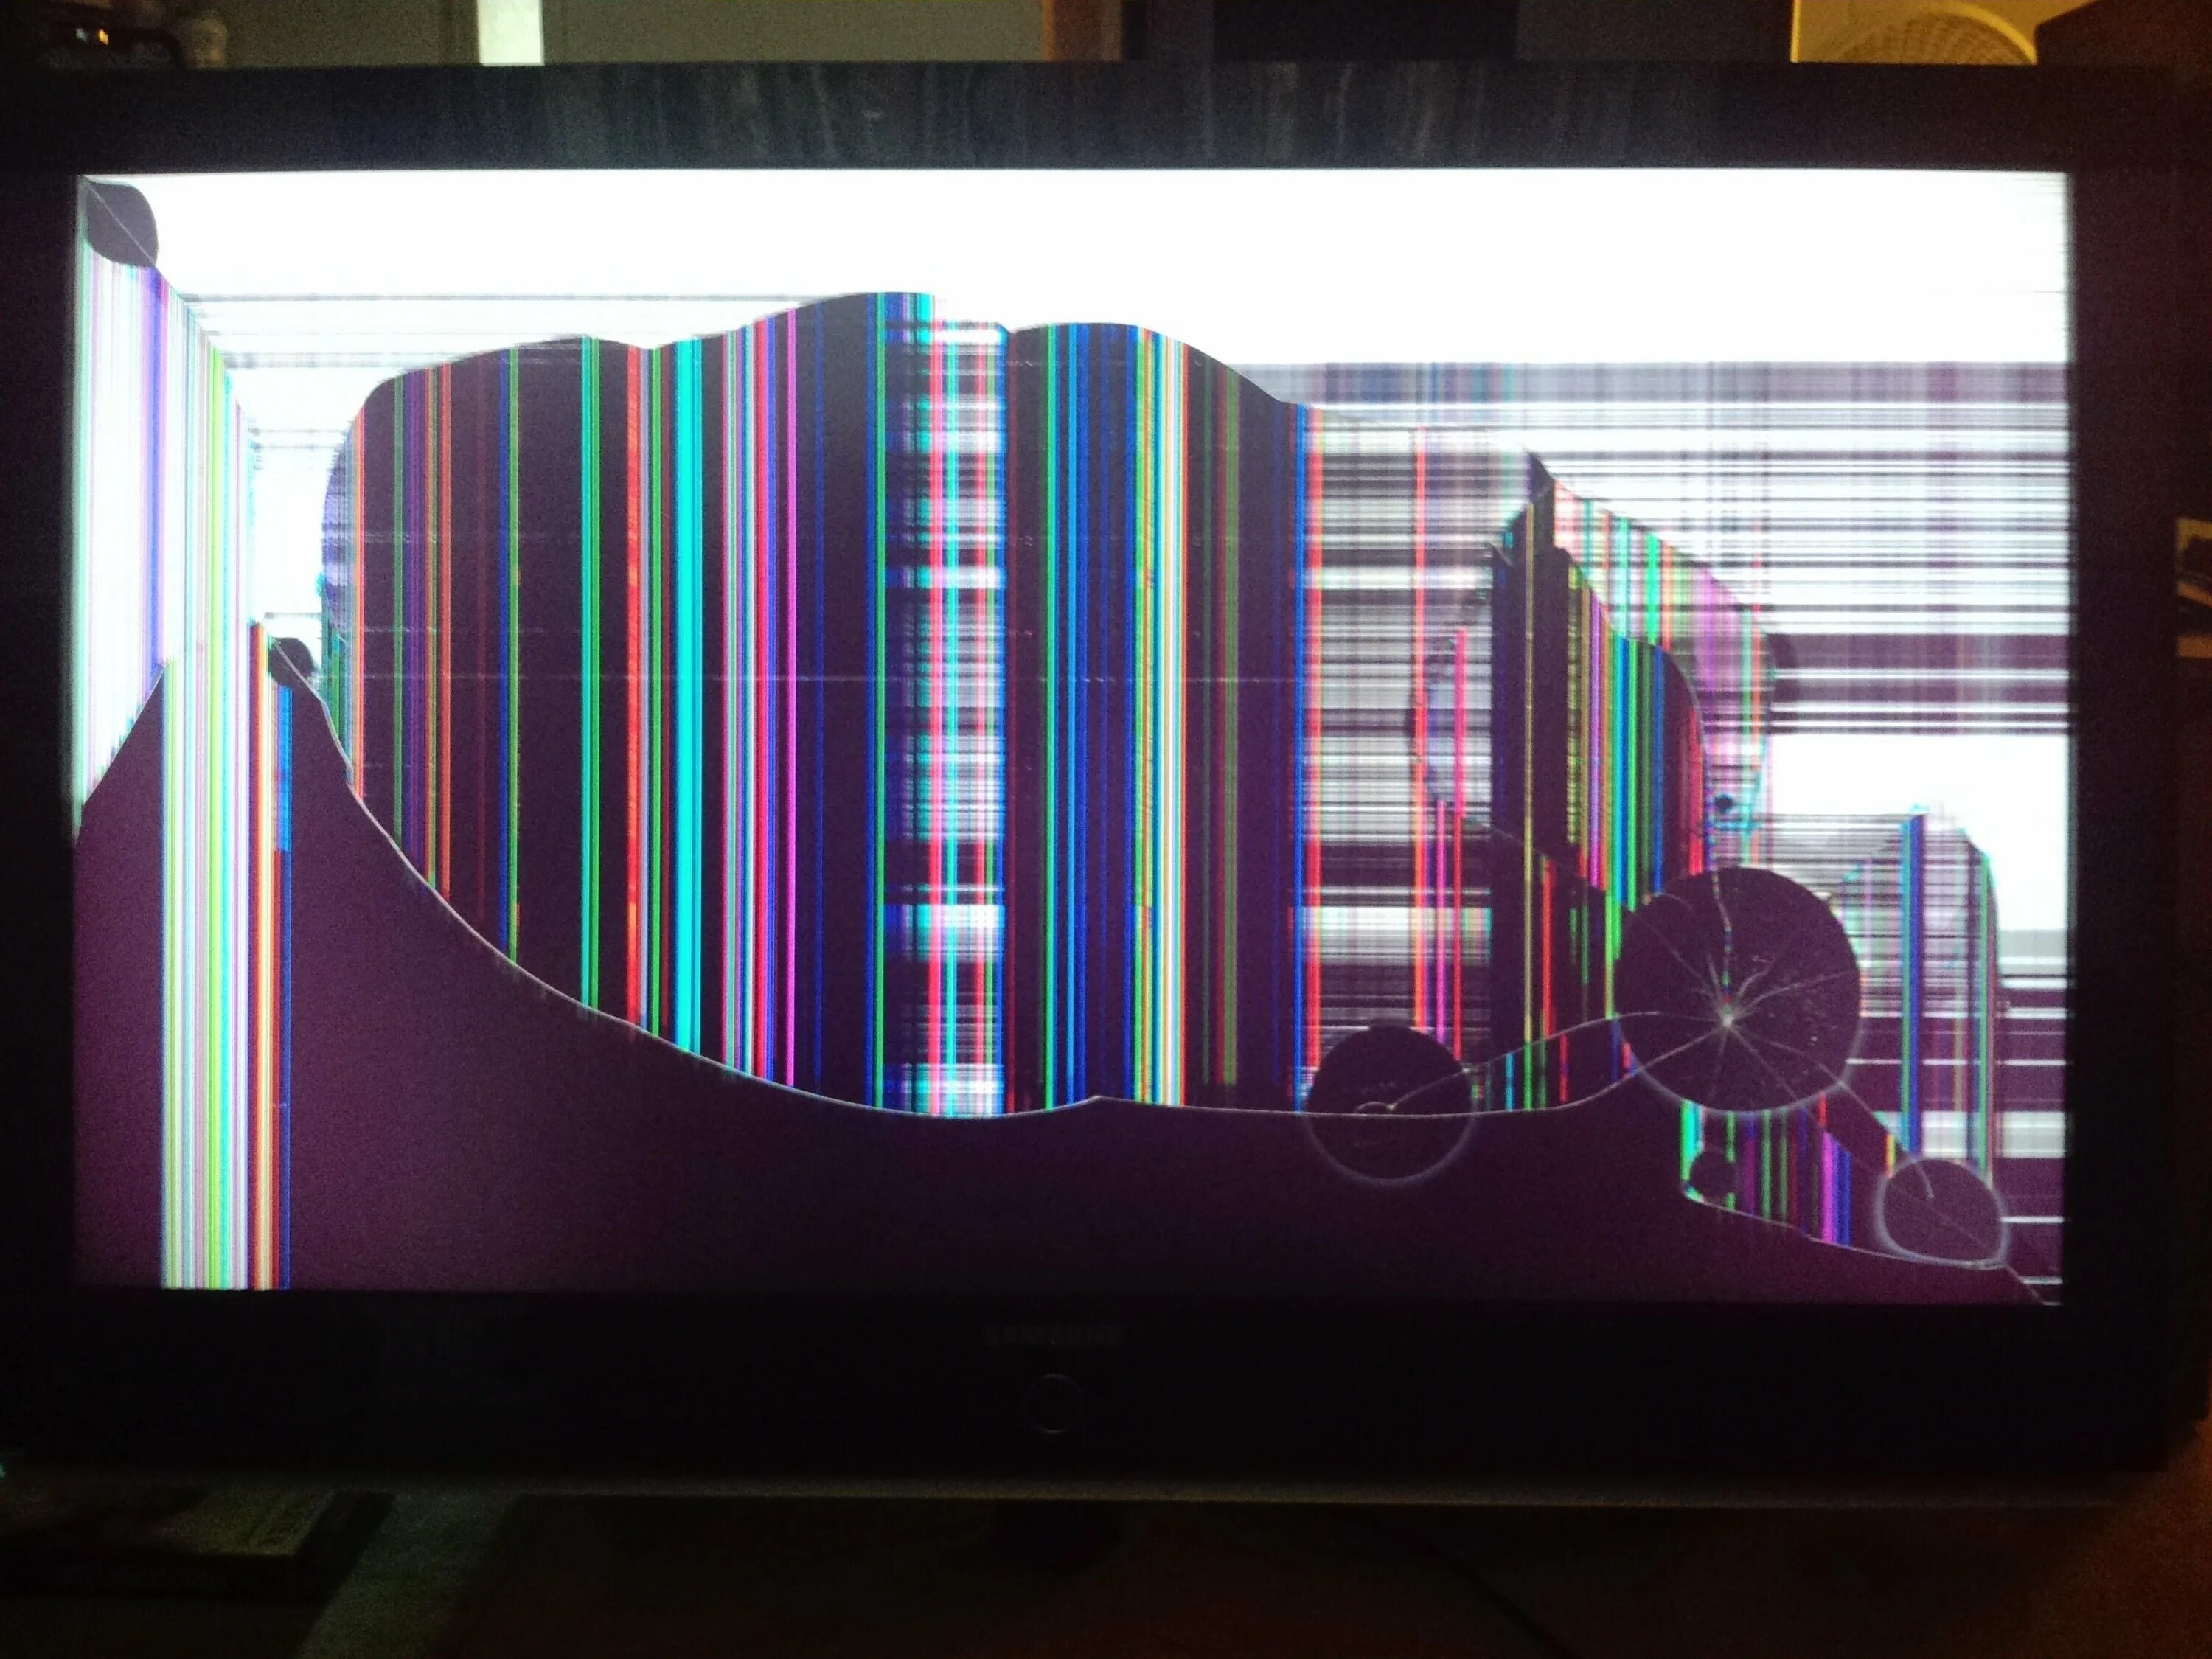 Телевизор сломался буду. Разбитый телевизор. Разбитый экран телевизора. Разбитый икран теливизара. Разноцветные полосы на телевизоре.